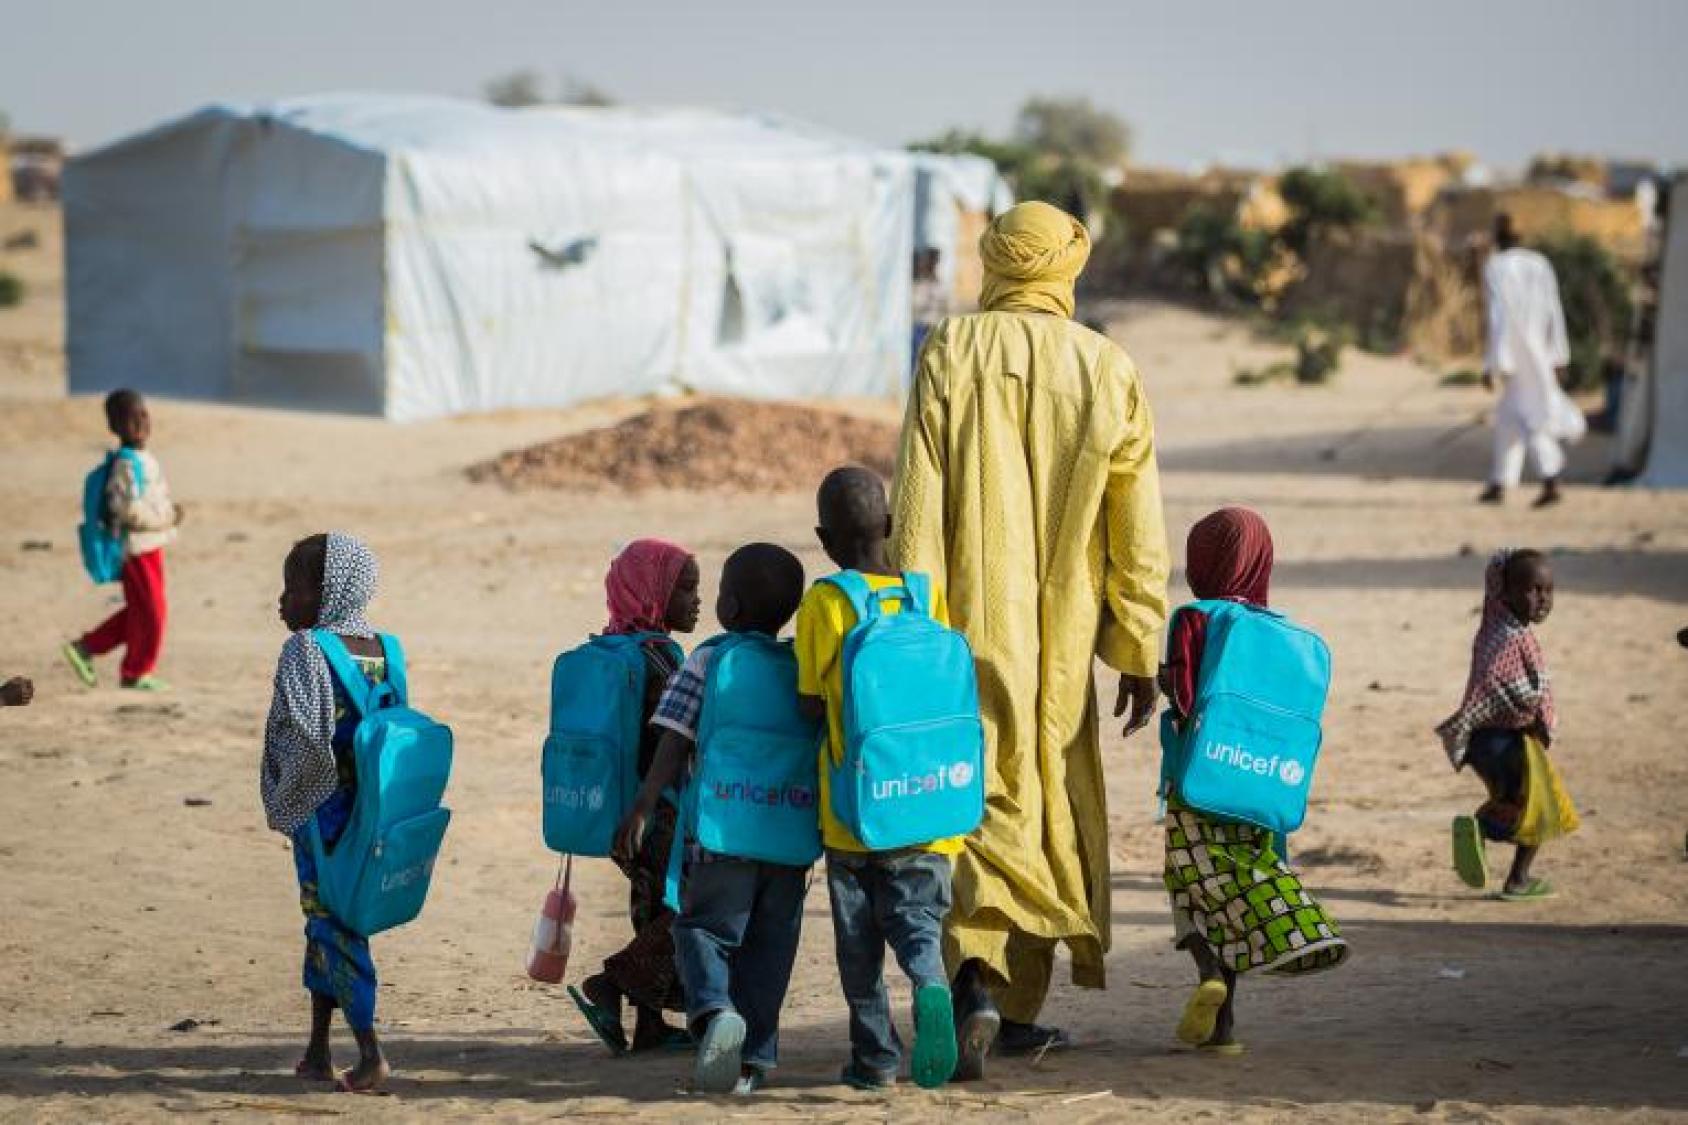 Un homme vêtu d'un habit traditionnel et d'un turban jaunes marche avec de jeunes enfants portant des sacs à dos bleus de l'UNICEF sur le dos. Dos à la caméra, le groupe se dirige vers une grande tente qui abrite une école.